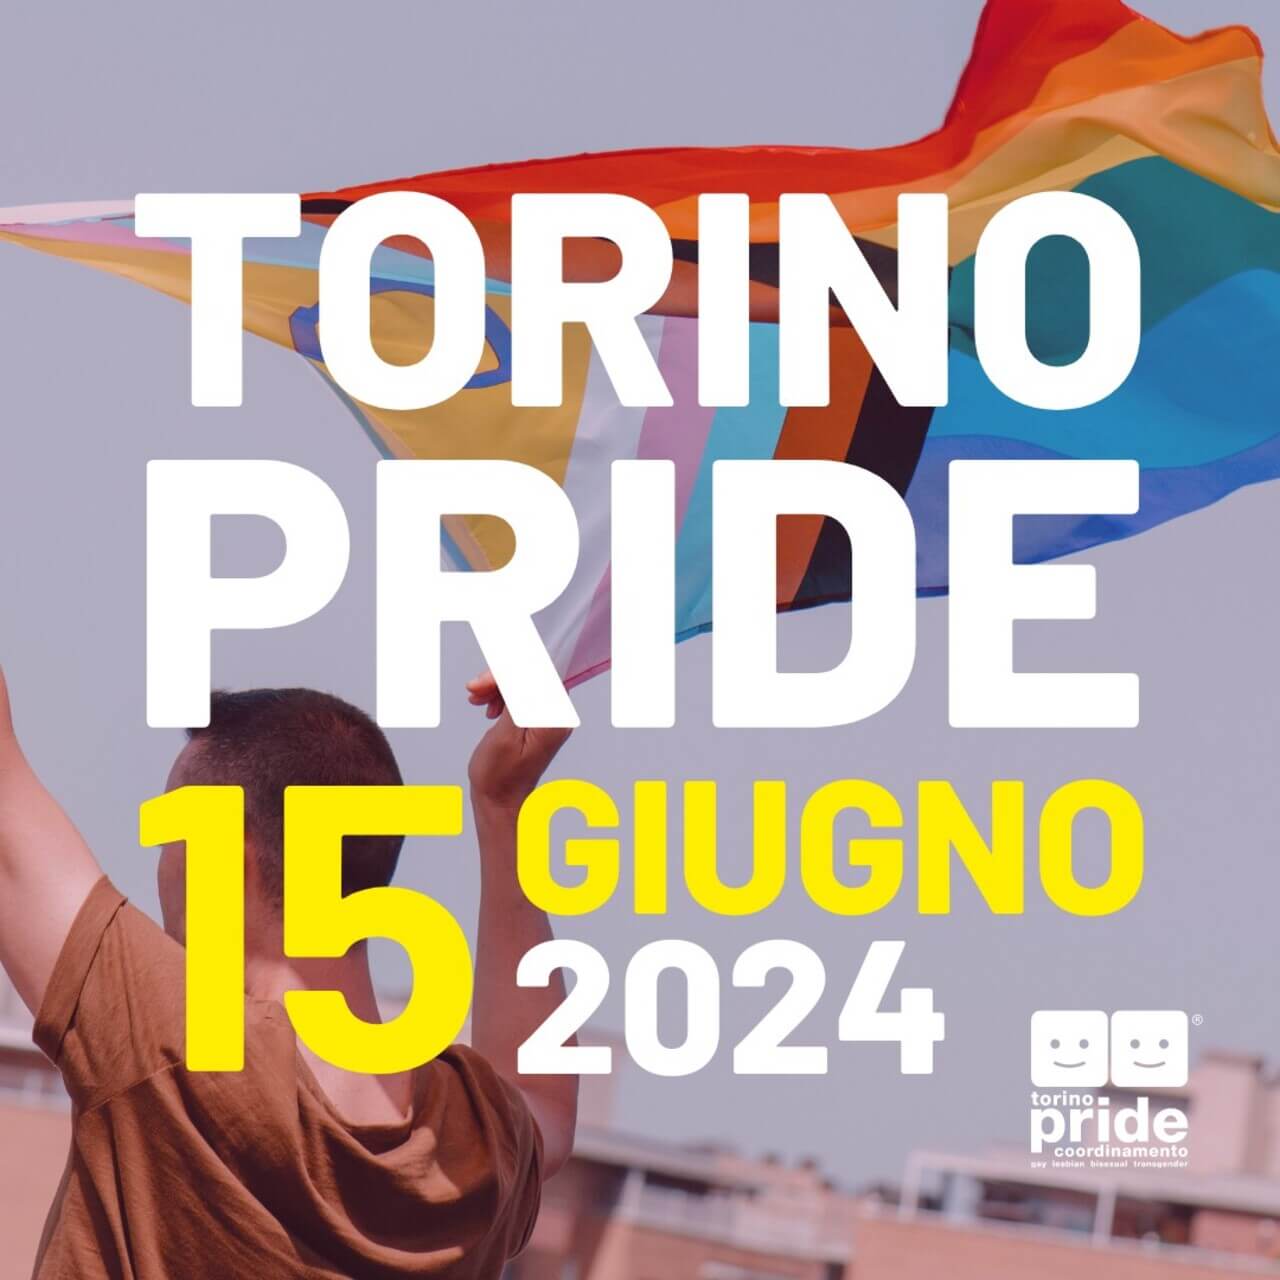 torino pride 2024, il 15 giugno